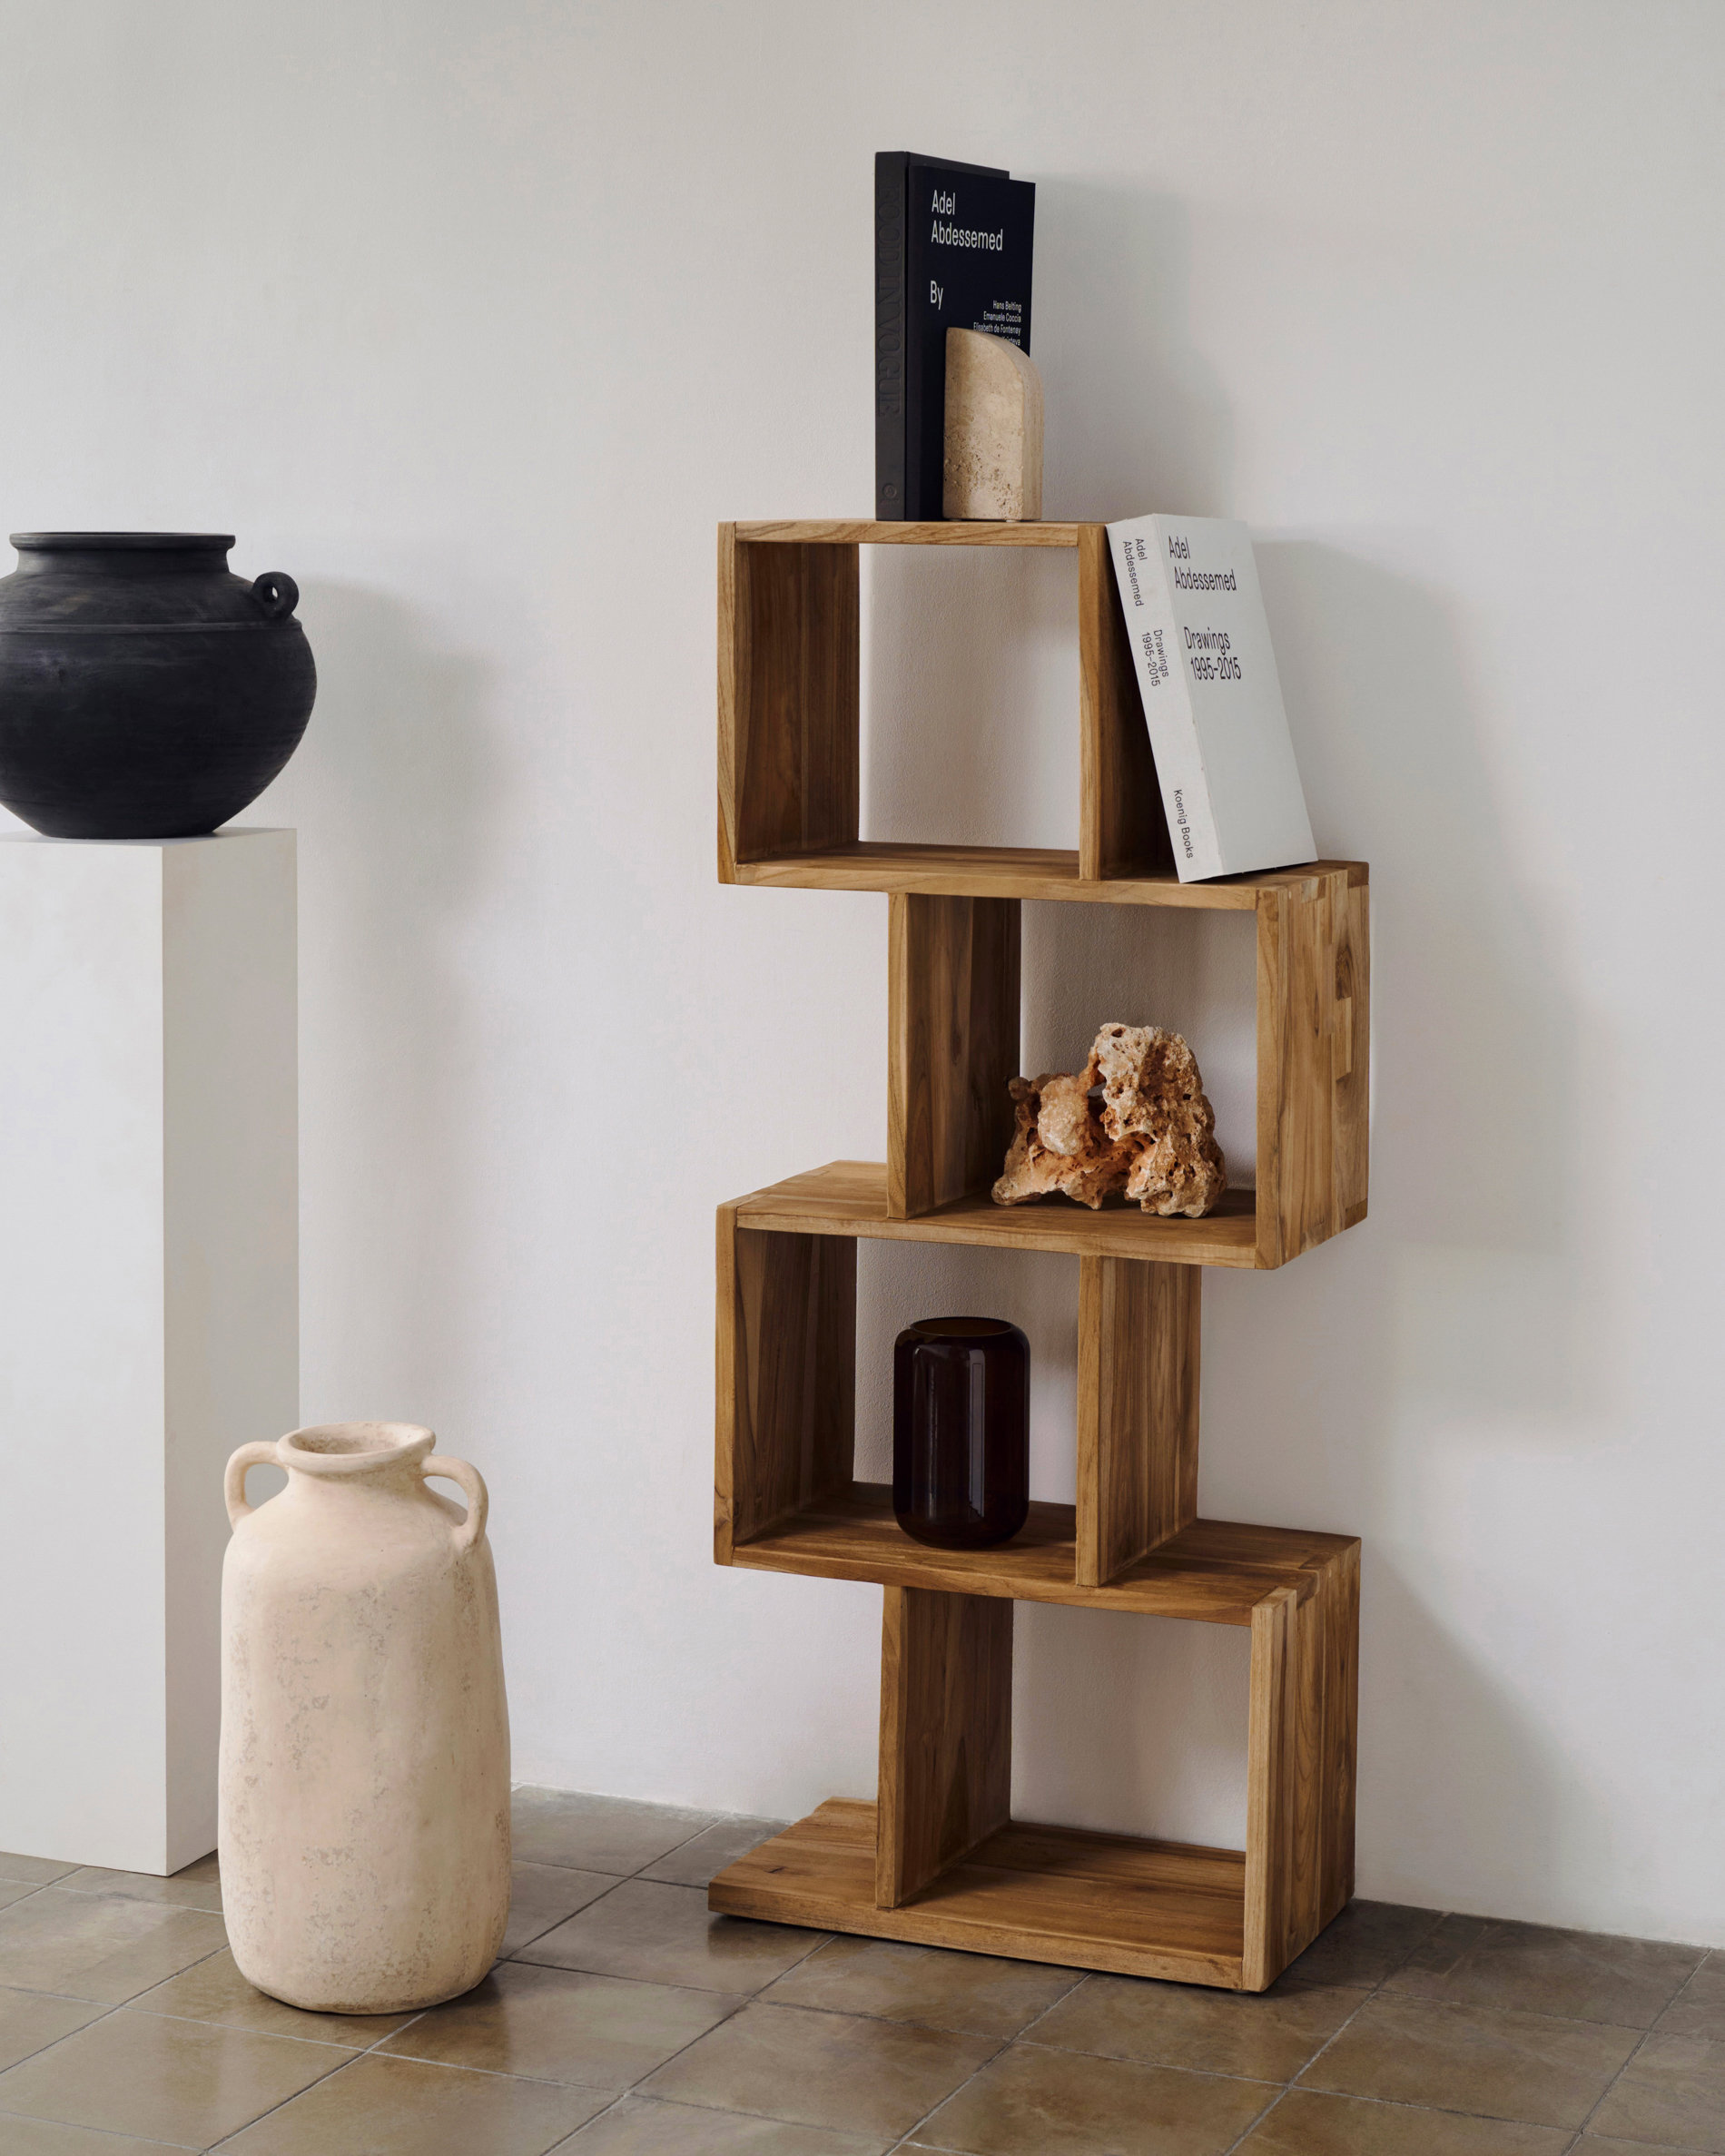 Estantería vertical moderna hecha de cubos de madera decorada con libros y una piedra natural. 